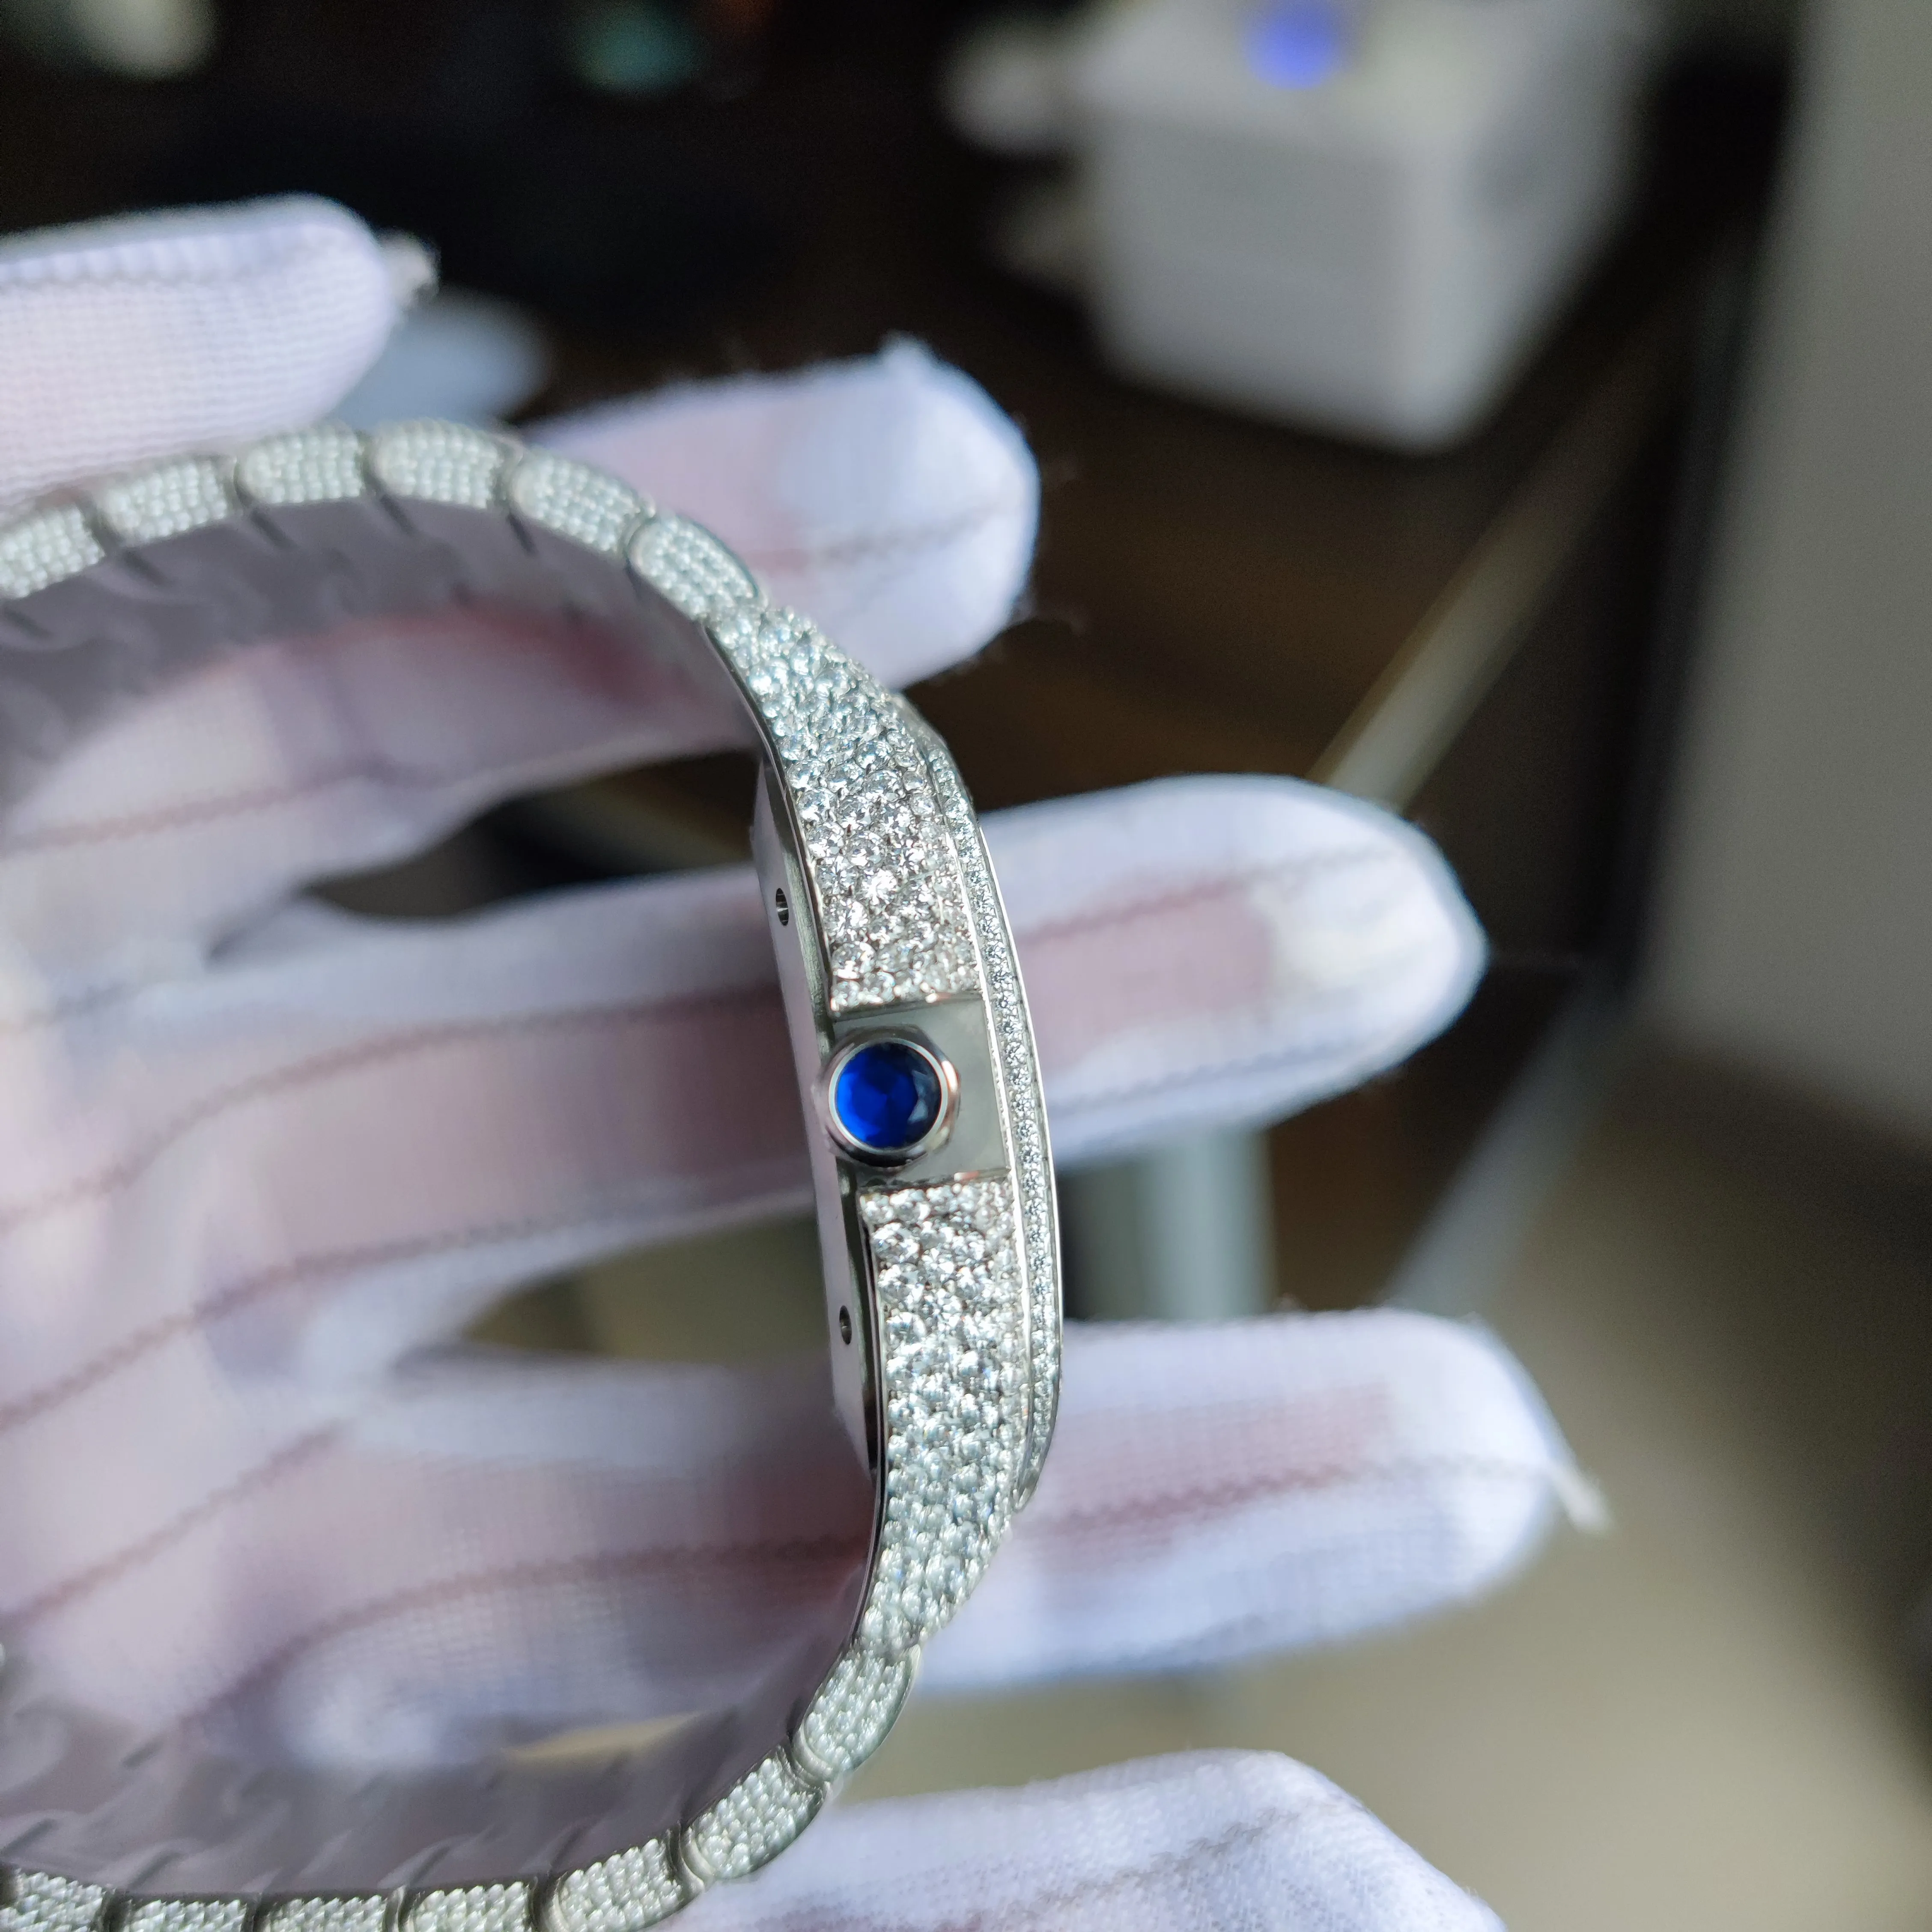 40mm Top qualité Date hommes montre bracelet Romain Arabe heure maker Diamants Cadran Automatique Montre-bracelet En Acier inoxydable Diamant I241S